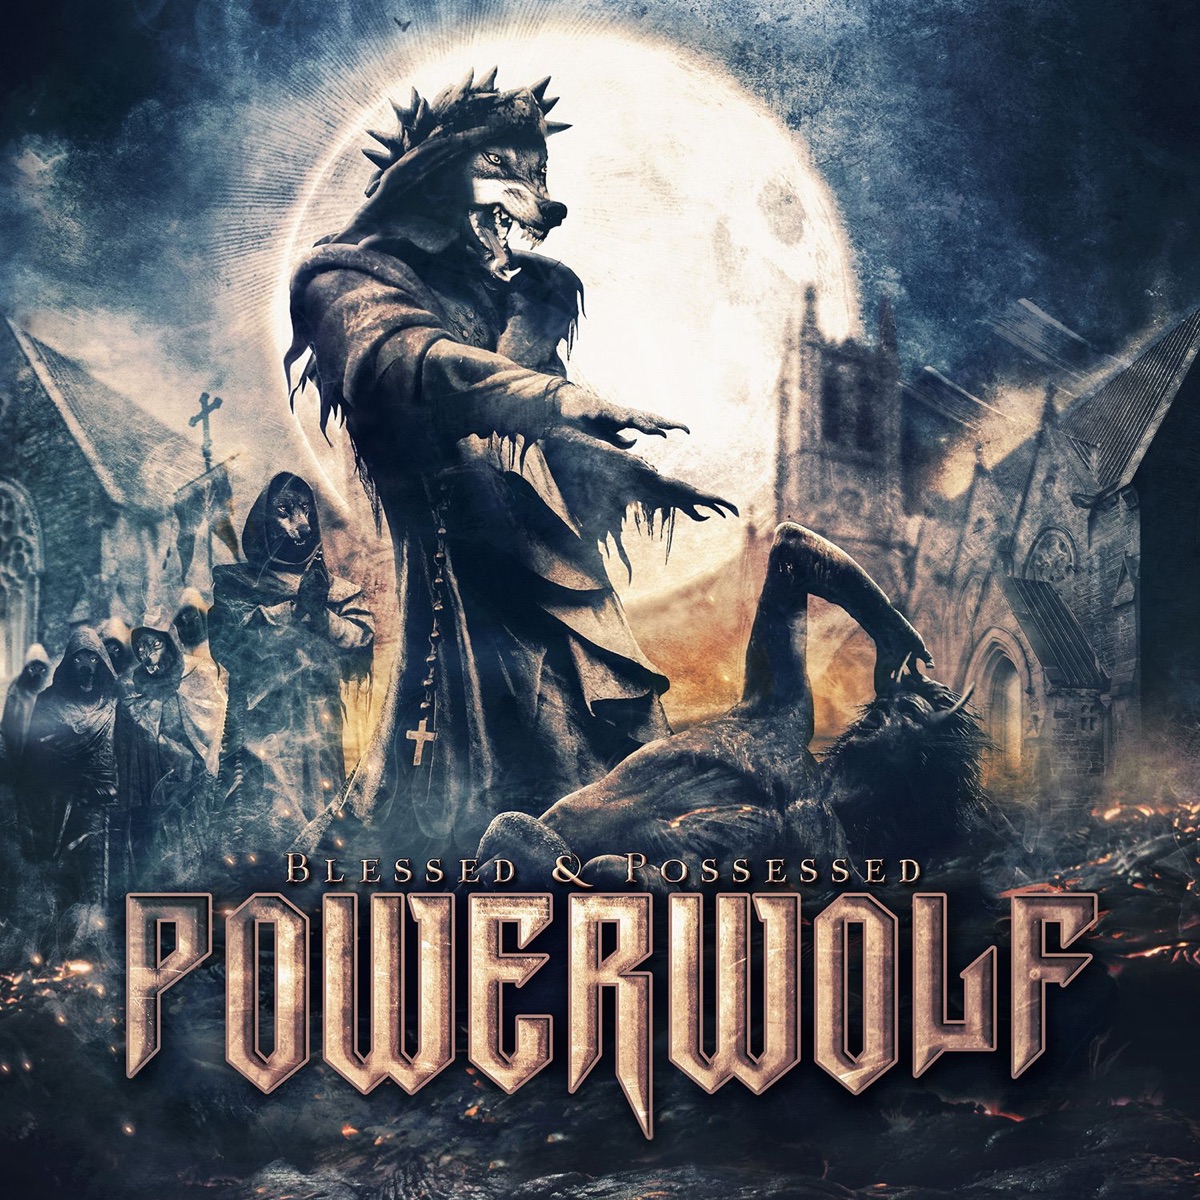 Powerwolf - Night of the Werewolves - скачать песню бесплатно в mp3 или  слушать онлайн в хорошем качестве